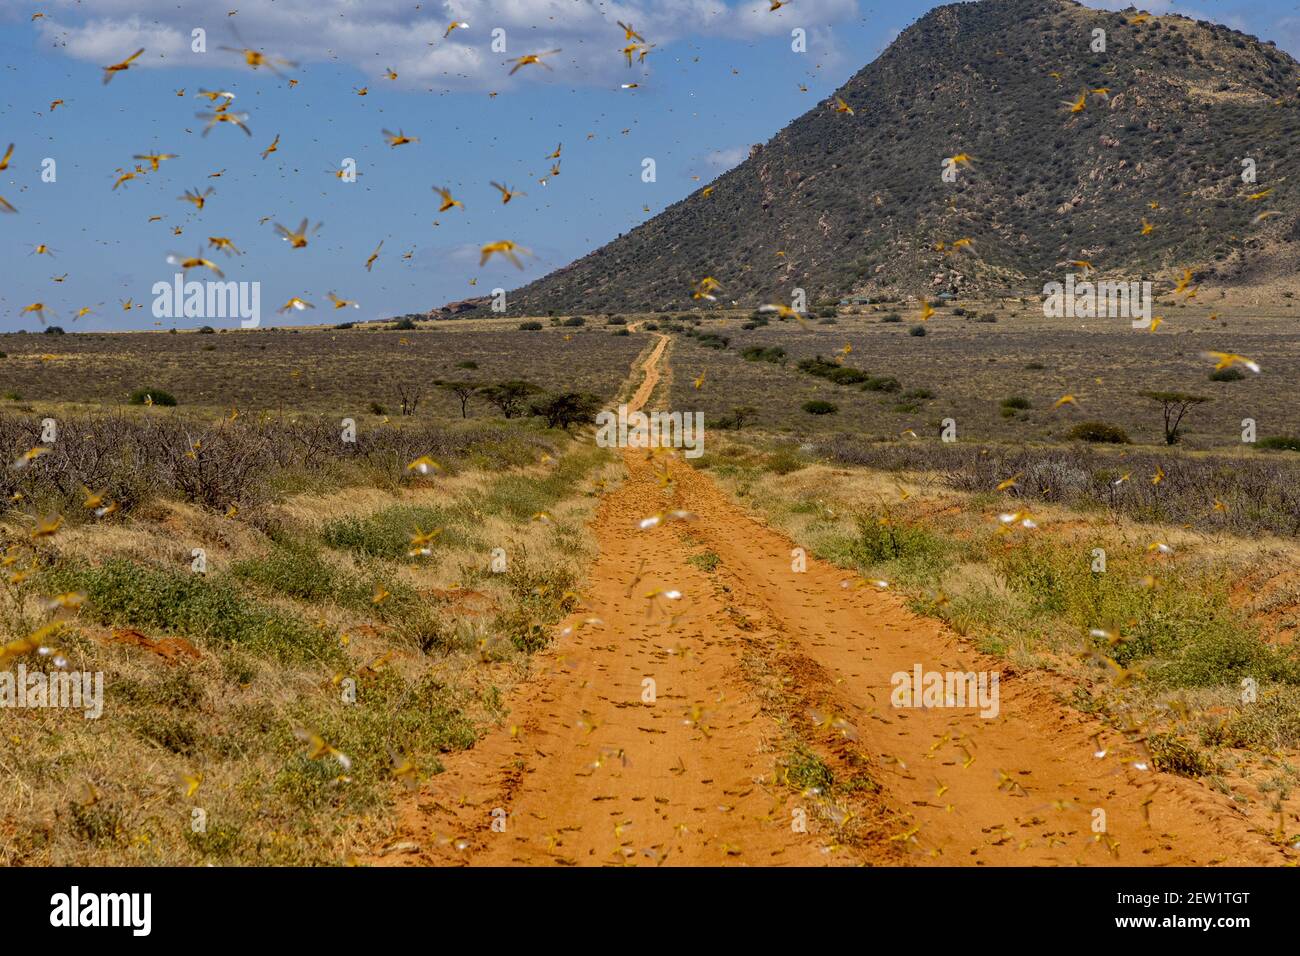 Kenya, Samburu district, Desert Locust (Schistocerca gregaria), in flight over runway Stock Photo